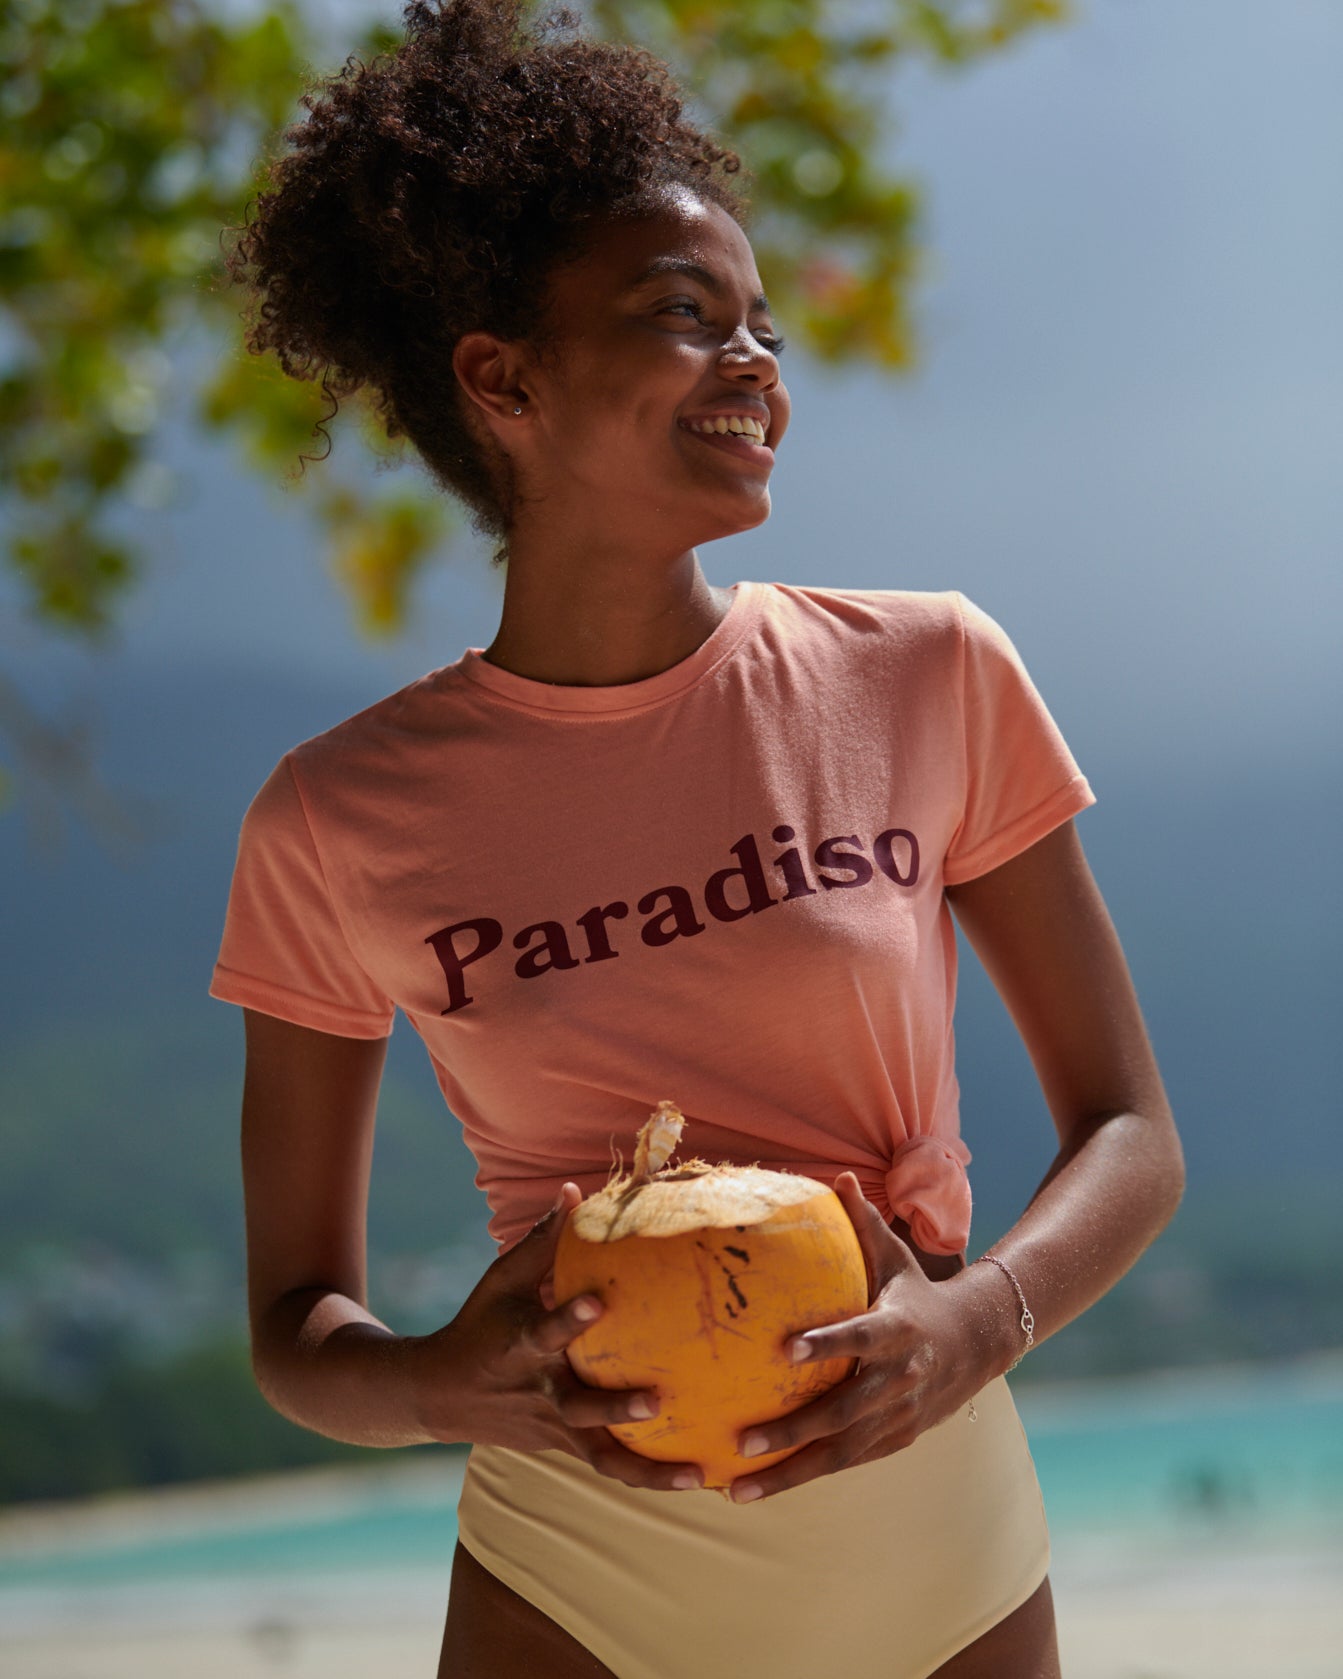 Koralowy t-shirt Paradiso. Drivemebikini, Seszele 2020. Przenieś się w wymarzone miejsce z naszym T-shirtem Paradiso.